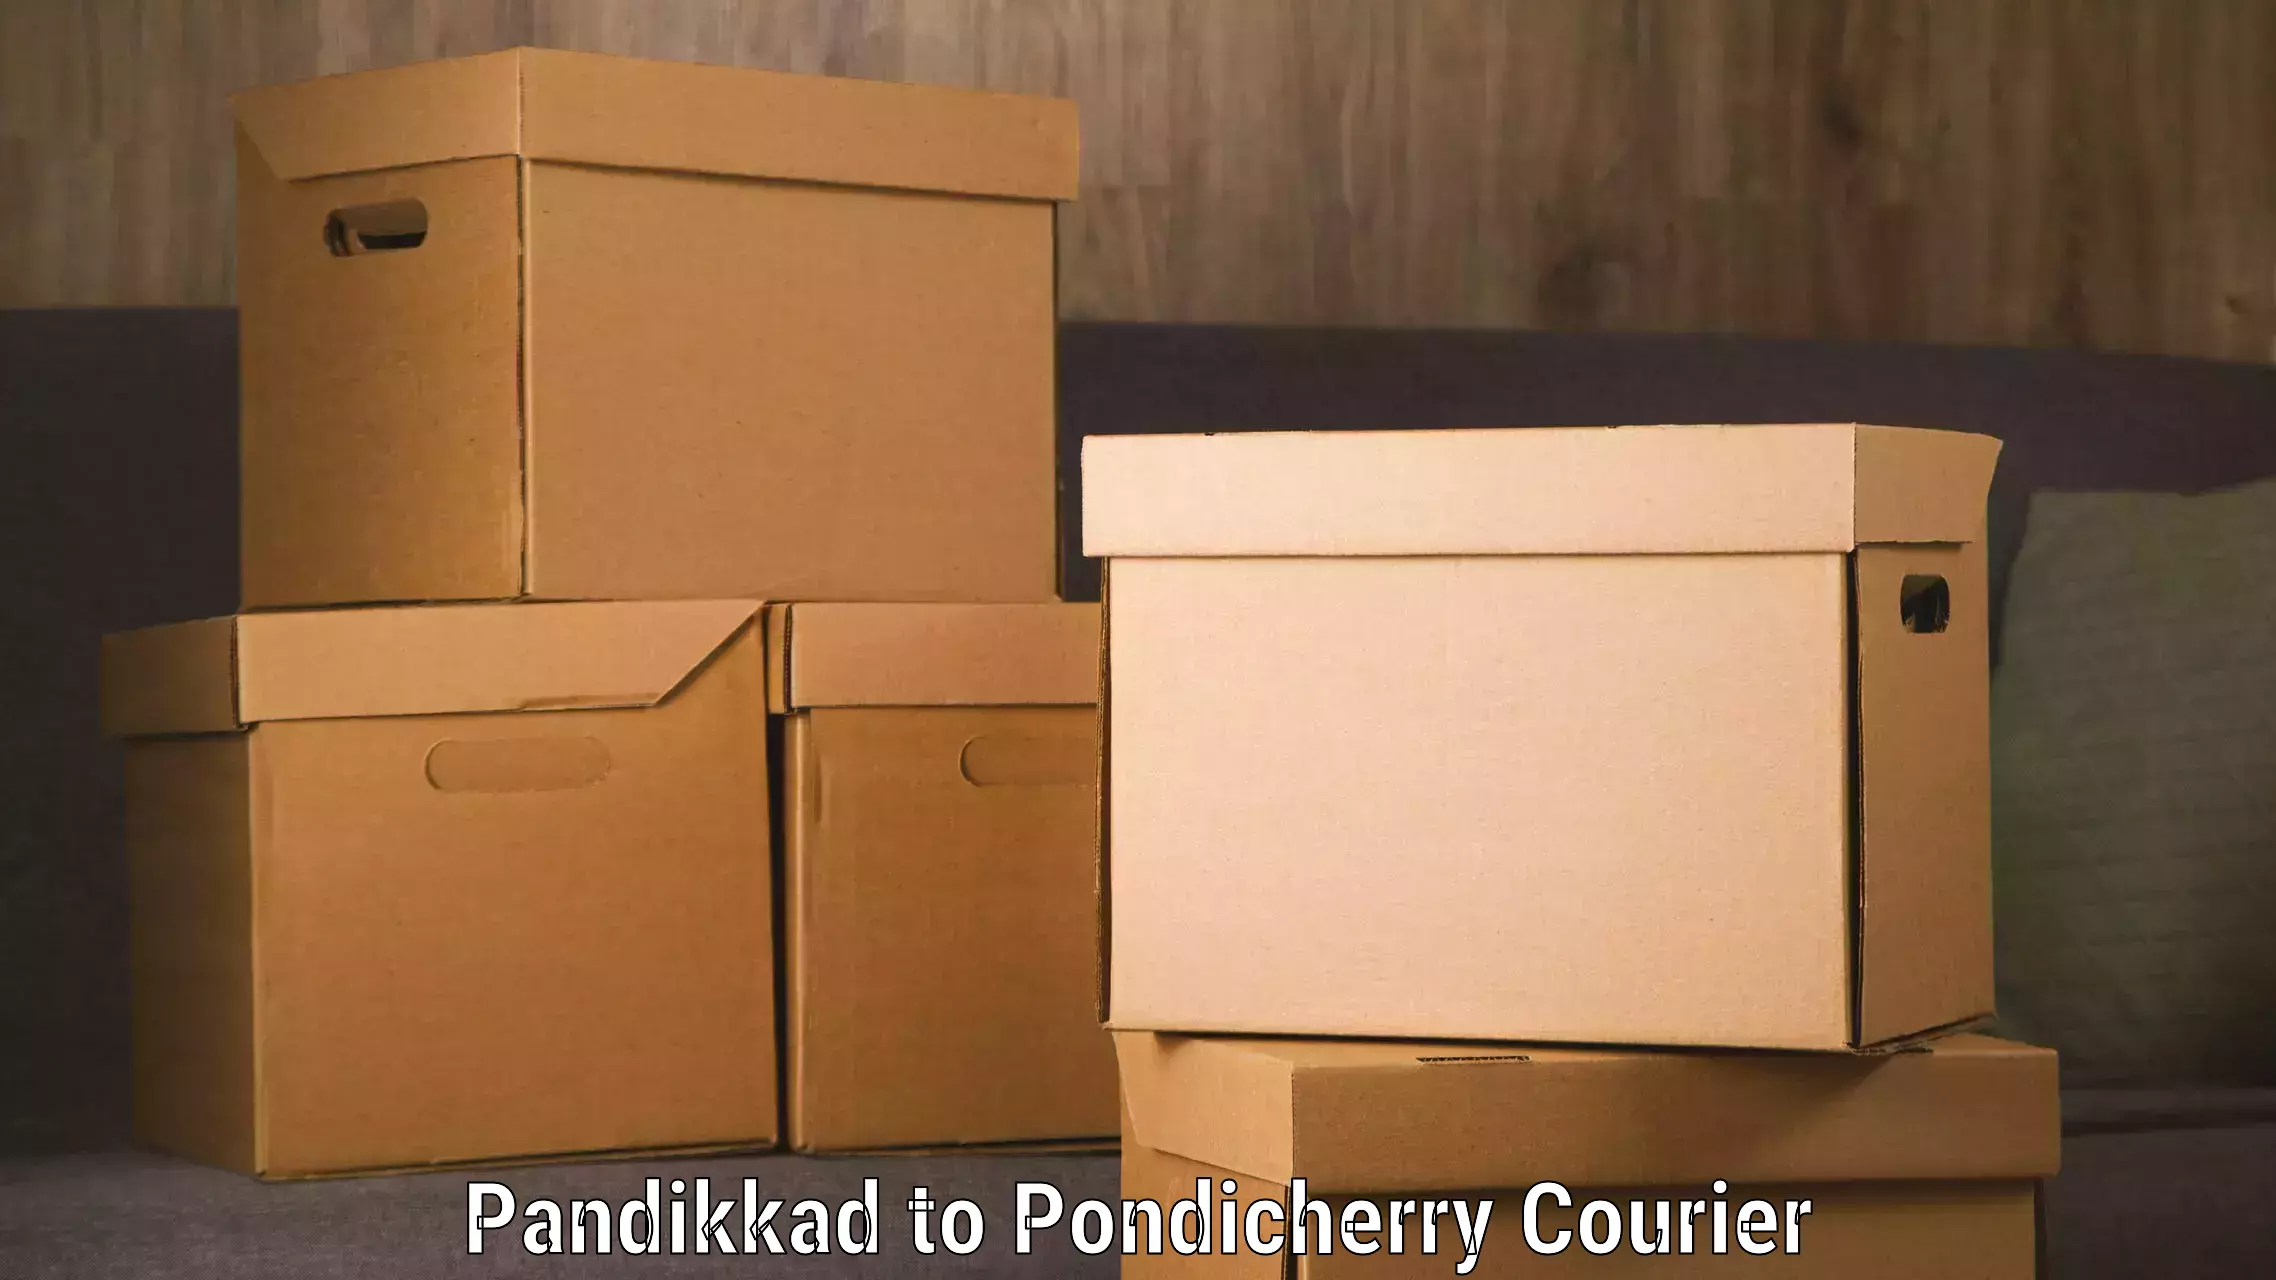 Innovative shipping solutions Pandikkad to Metttupalayam